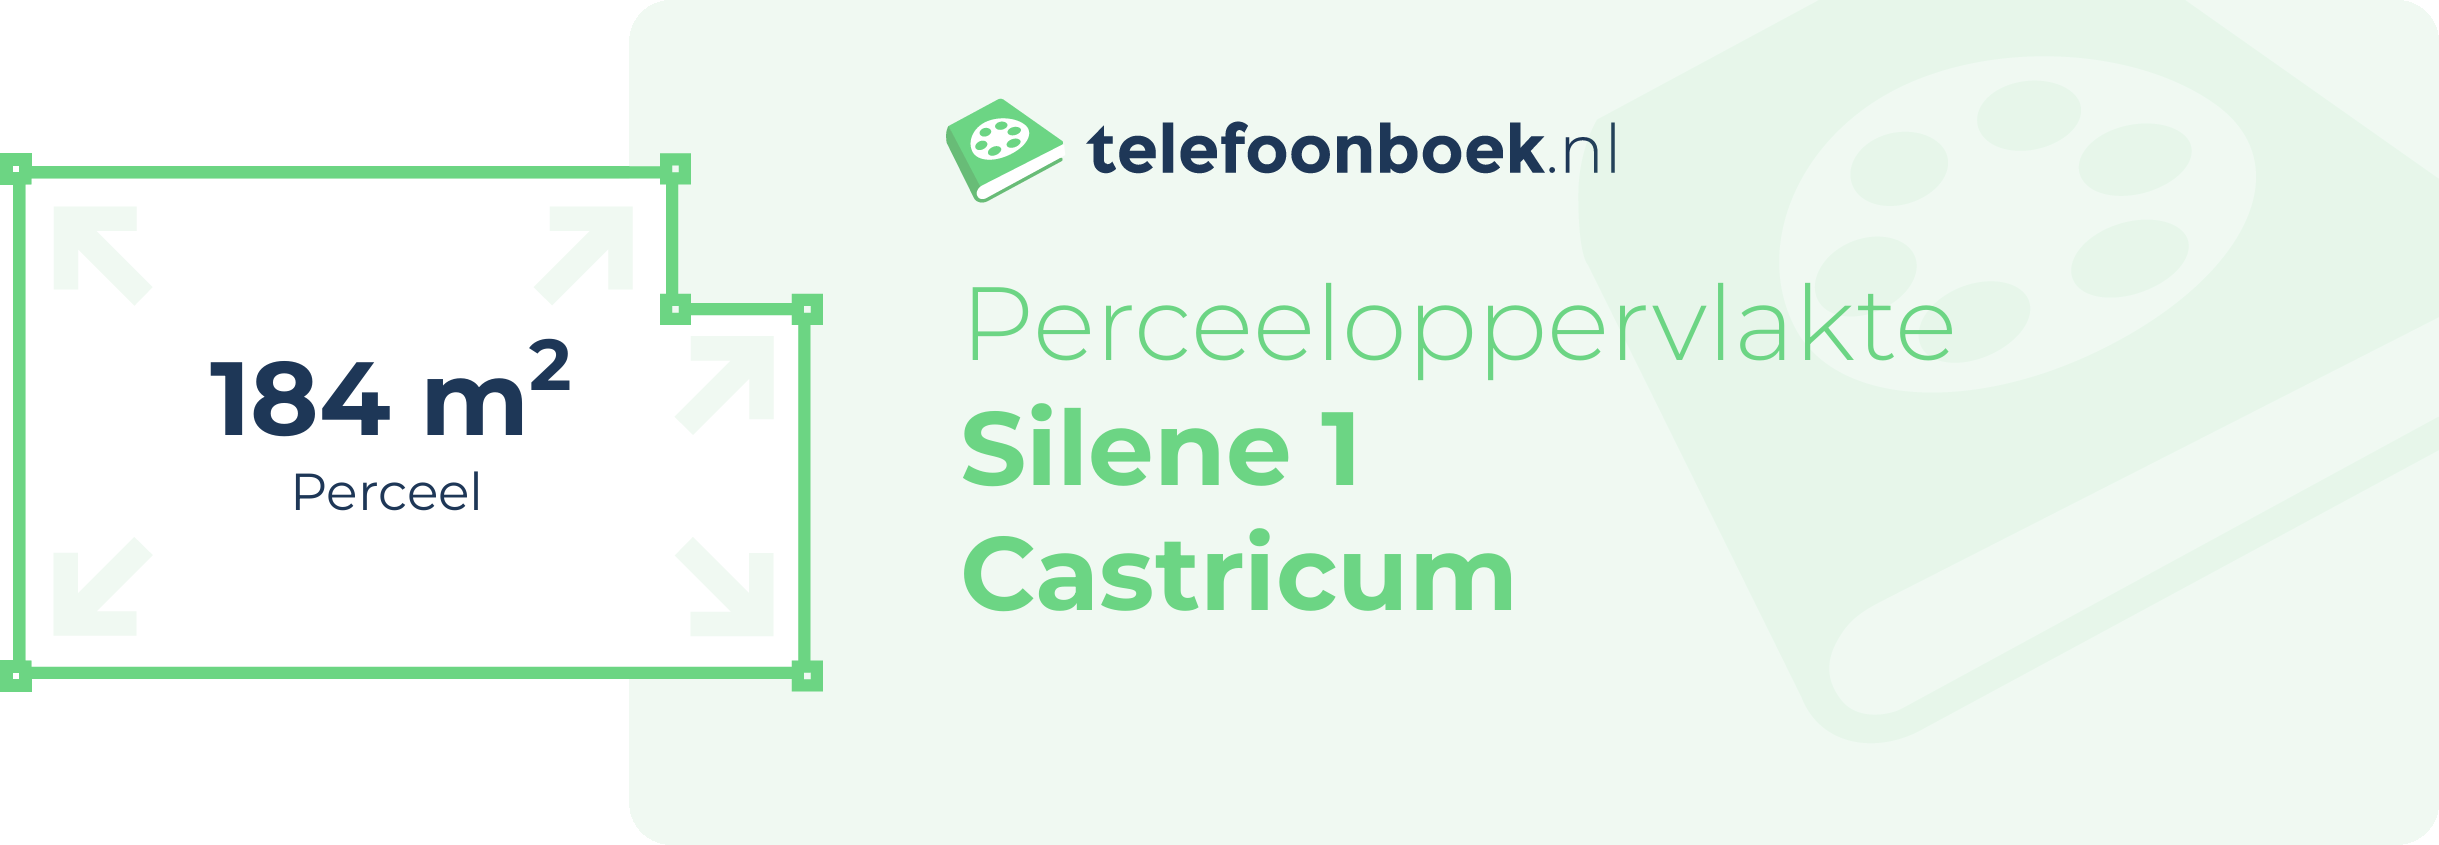 Perceeloppervlakte Silene 1 Castricum